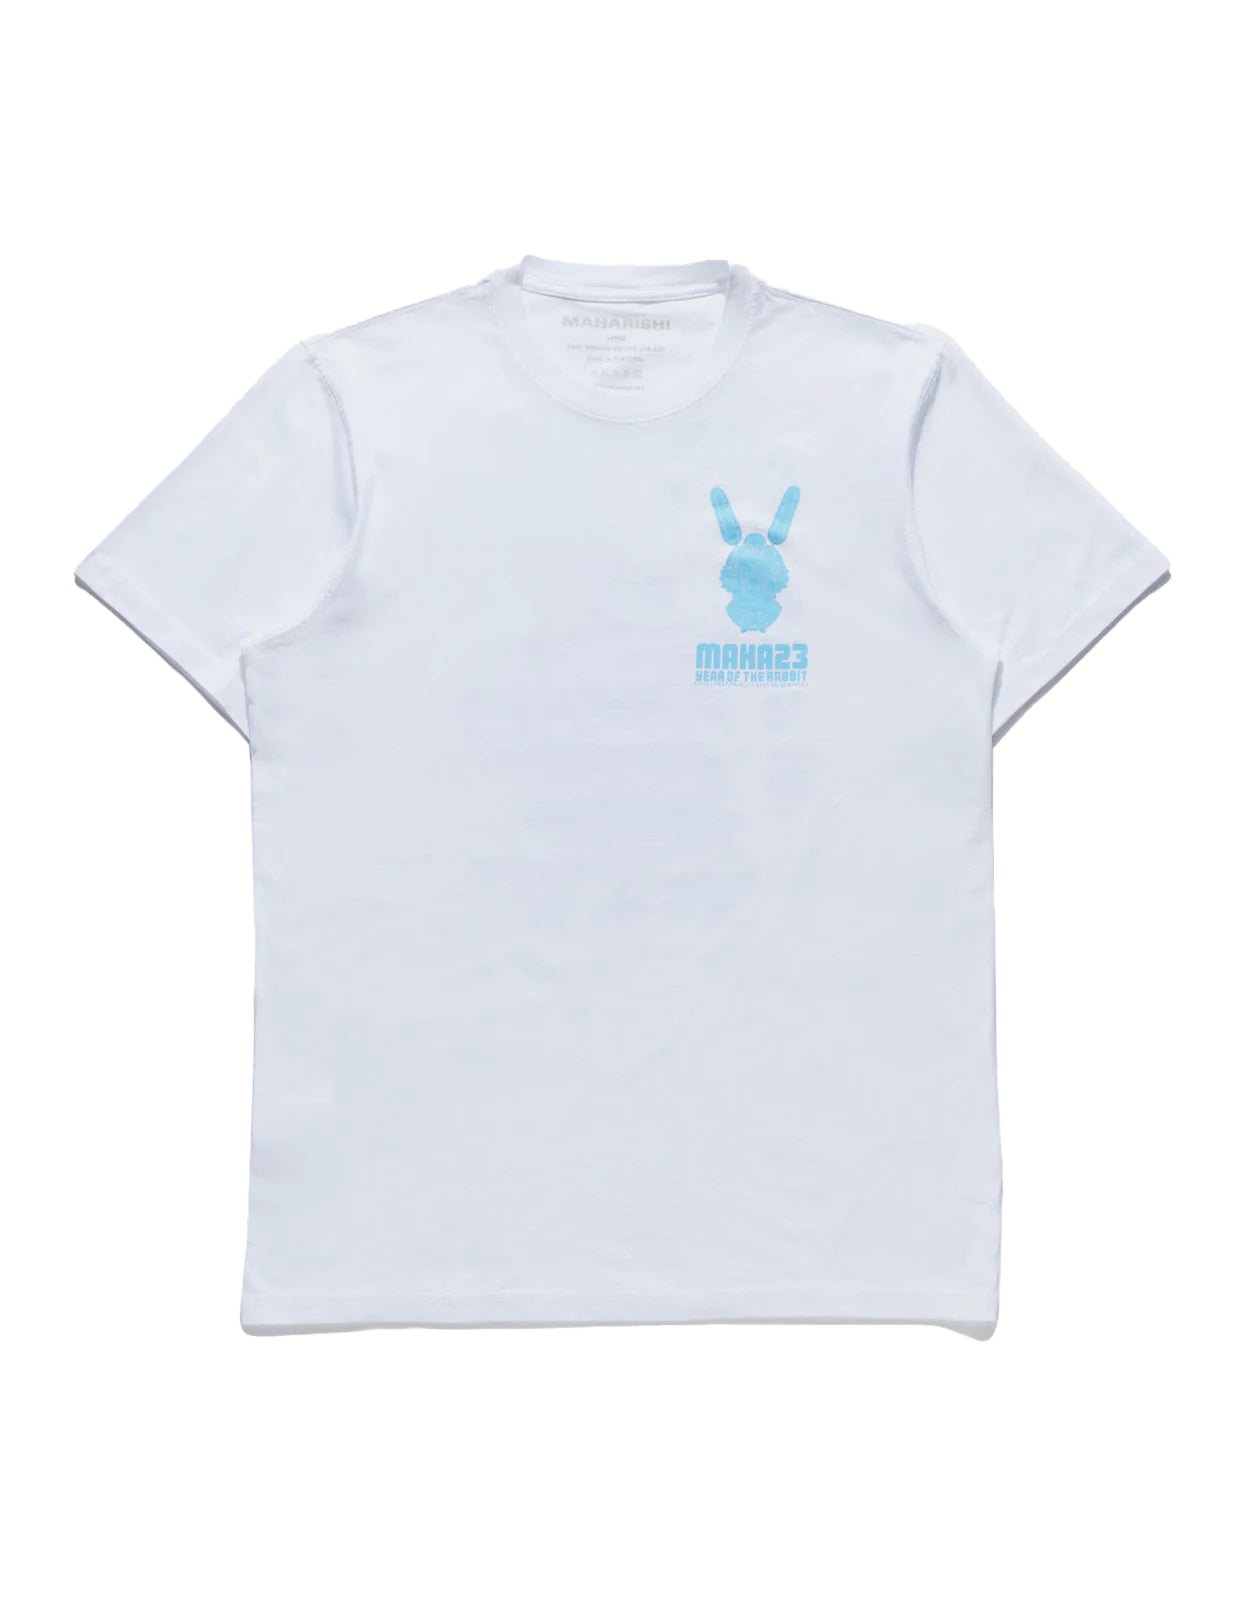 Maharishi Water Rabbit T-Shirt White